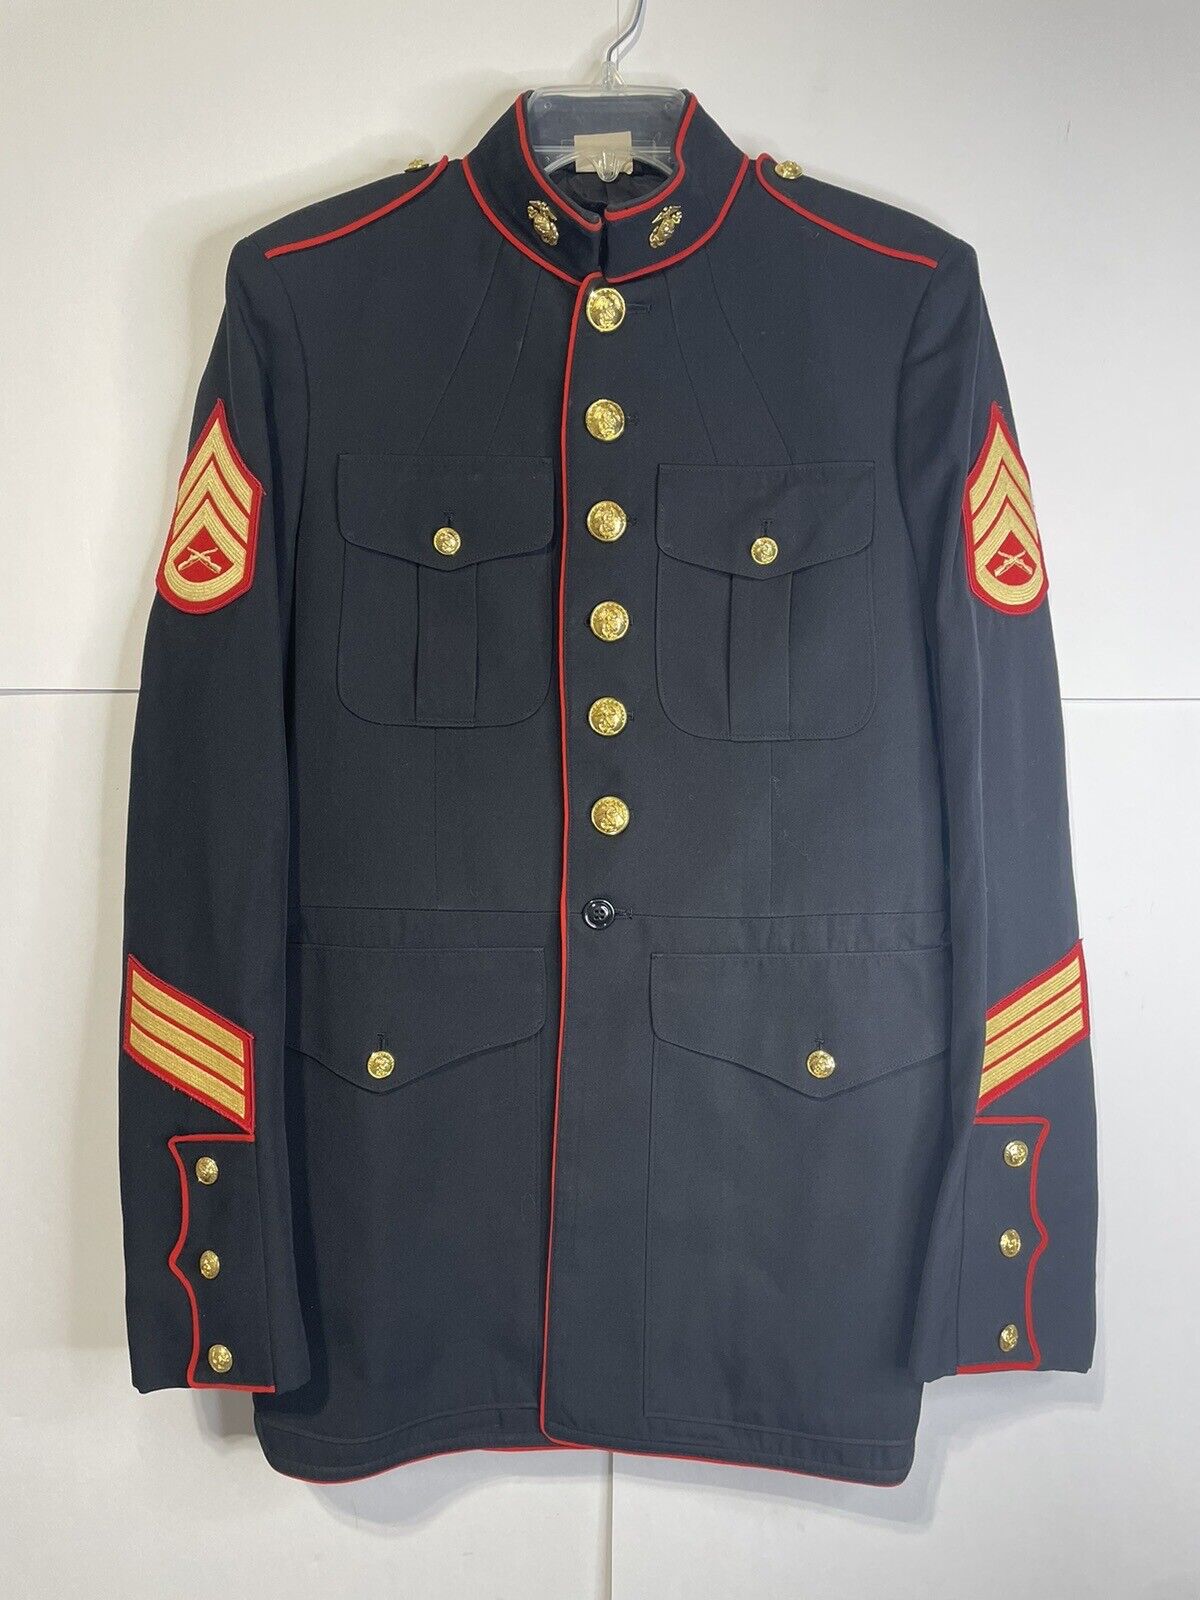 Genuine USMC U.S Marine Dress Blues Jacket Top - Size 43 XL Staff Sergeant